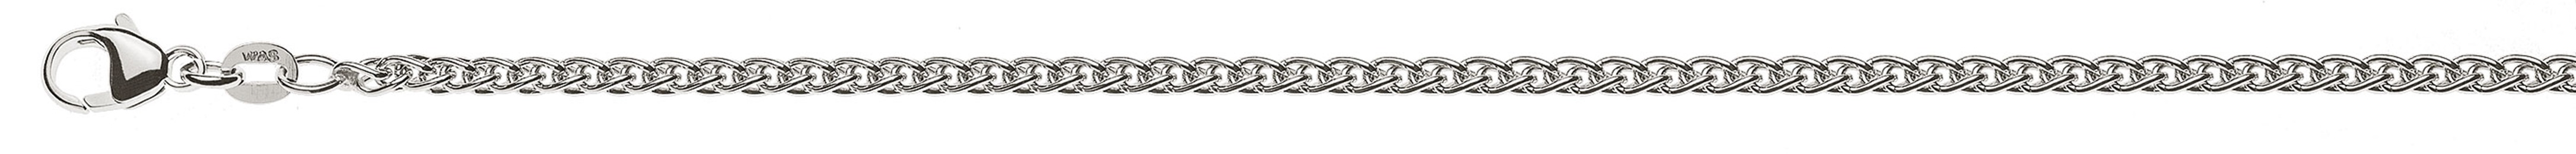 AURONOS Prestige Necklace white gold 18K cable chain 50cm 2.5mm